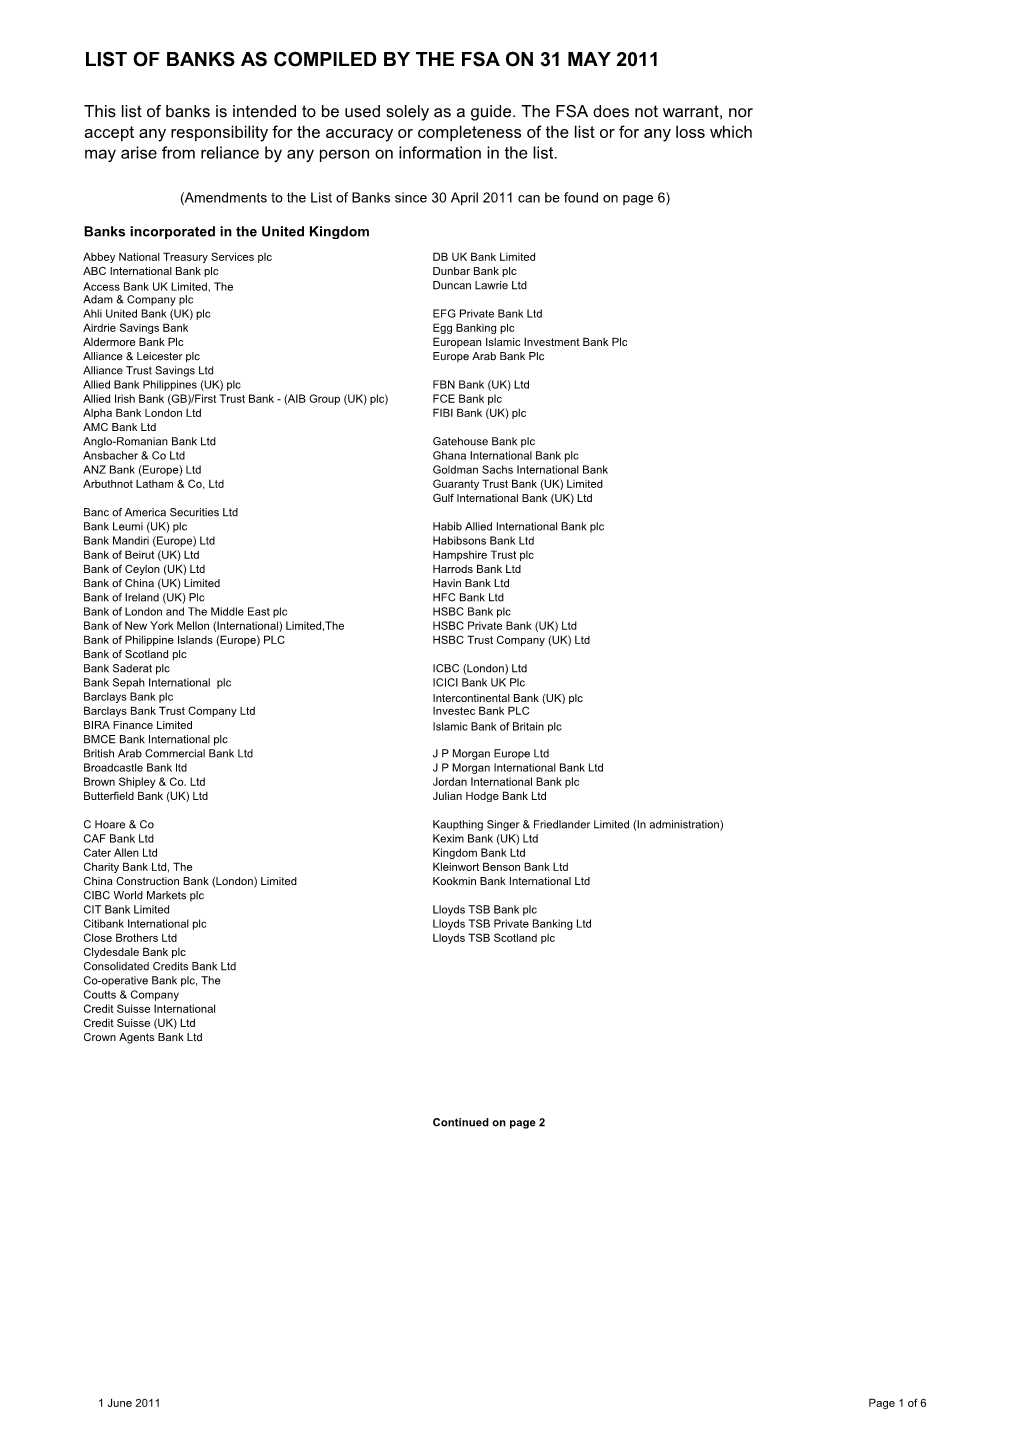 Banks List (May 2011)